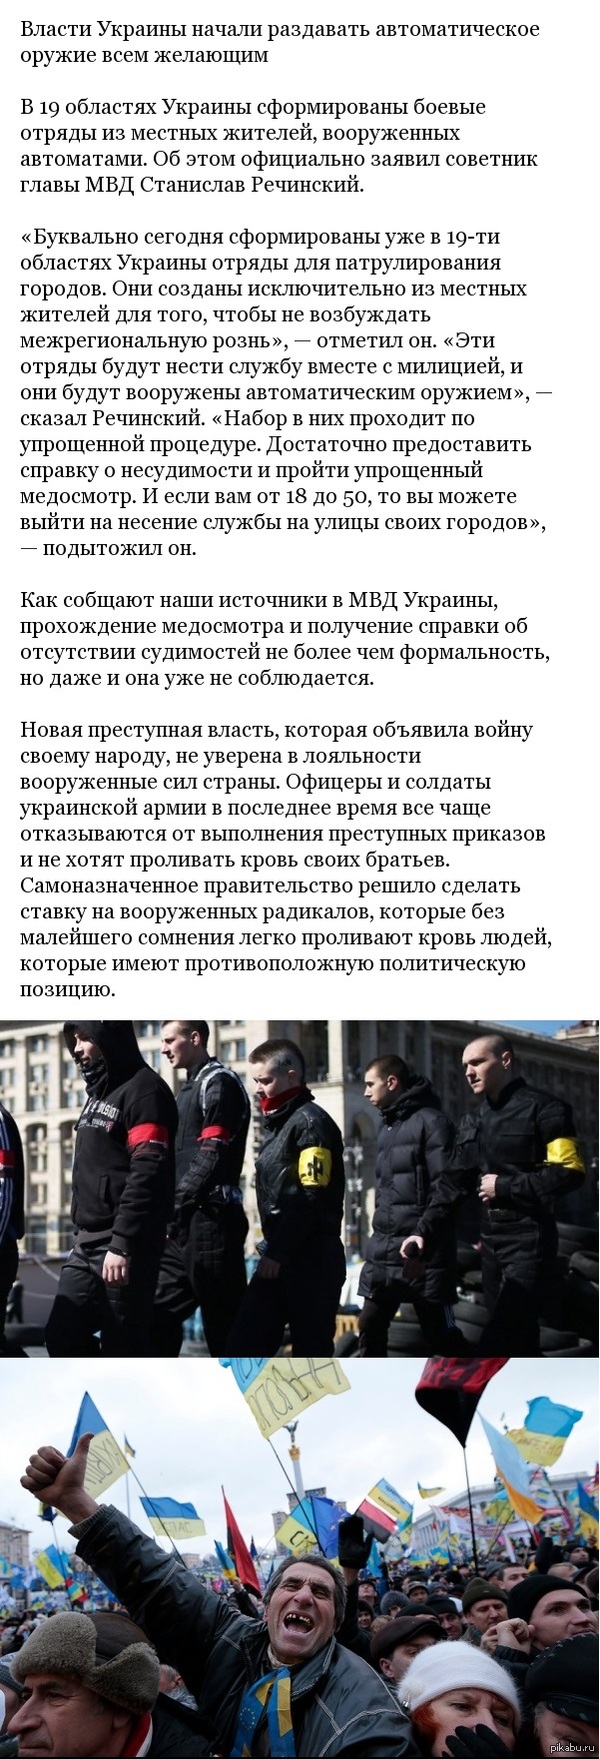        http://www.day.kiev.ua/ru/news/150414-otryady-dobrovolnyh-patrulnyh-sozdany-v-19-regionah